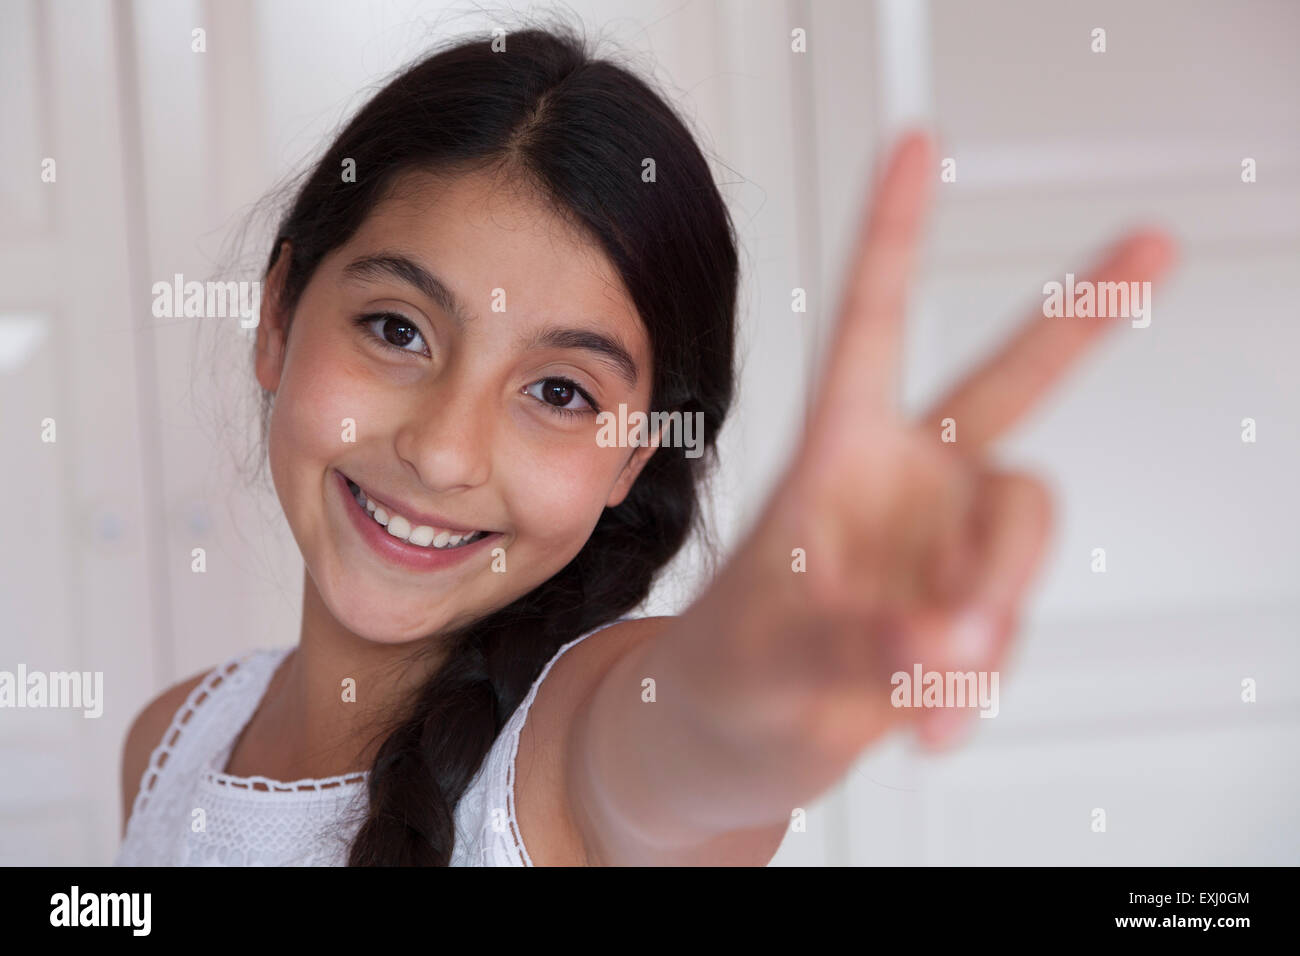 Glücklich Teenager-Mädchen mit V-Zeichen Geste Stockfoto